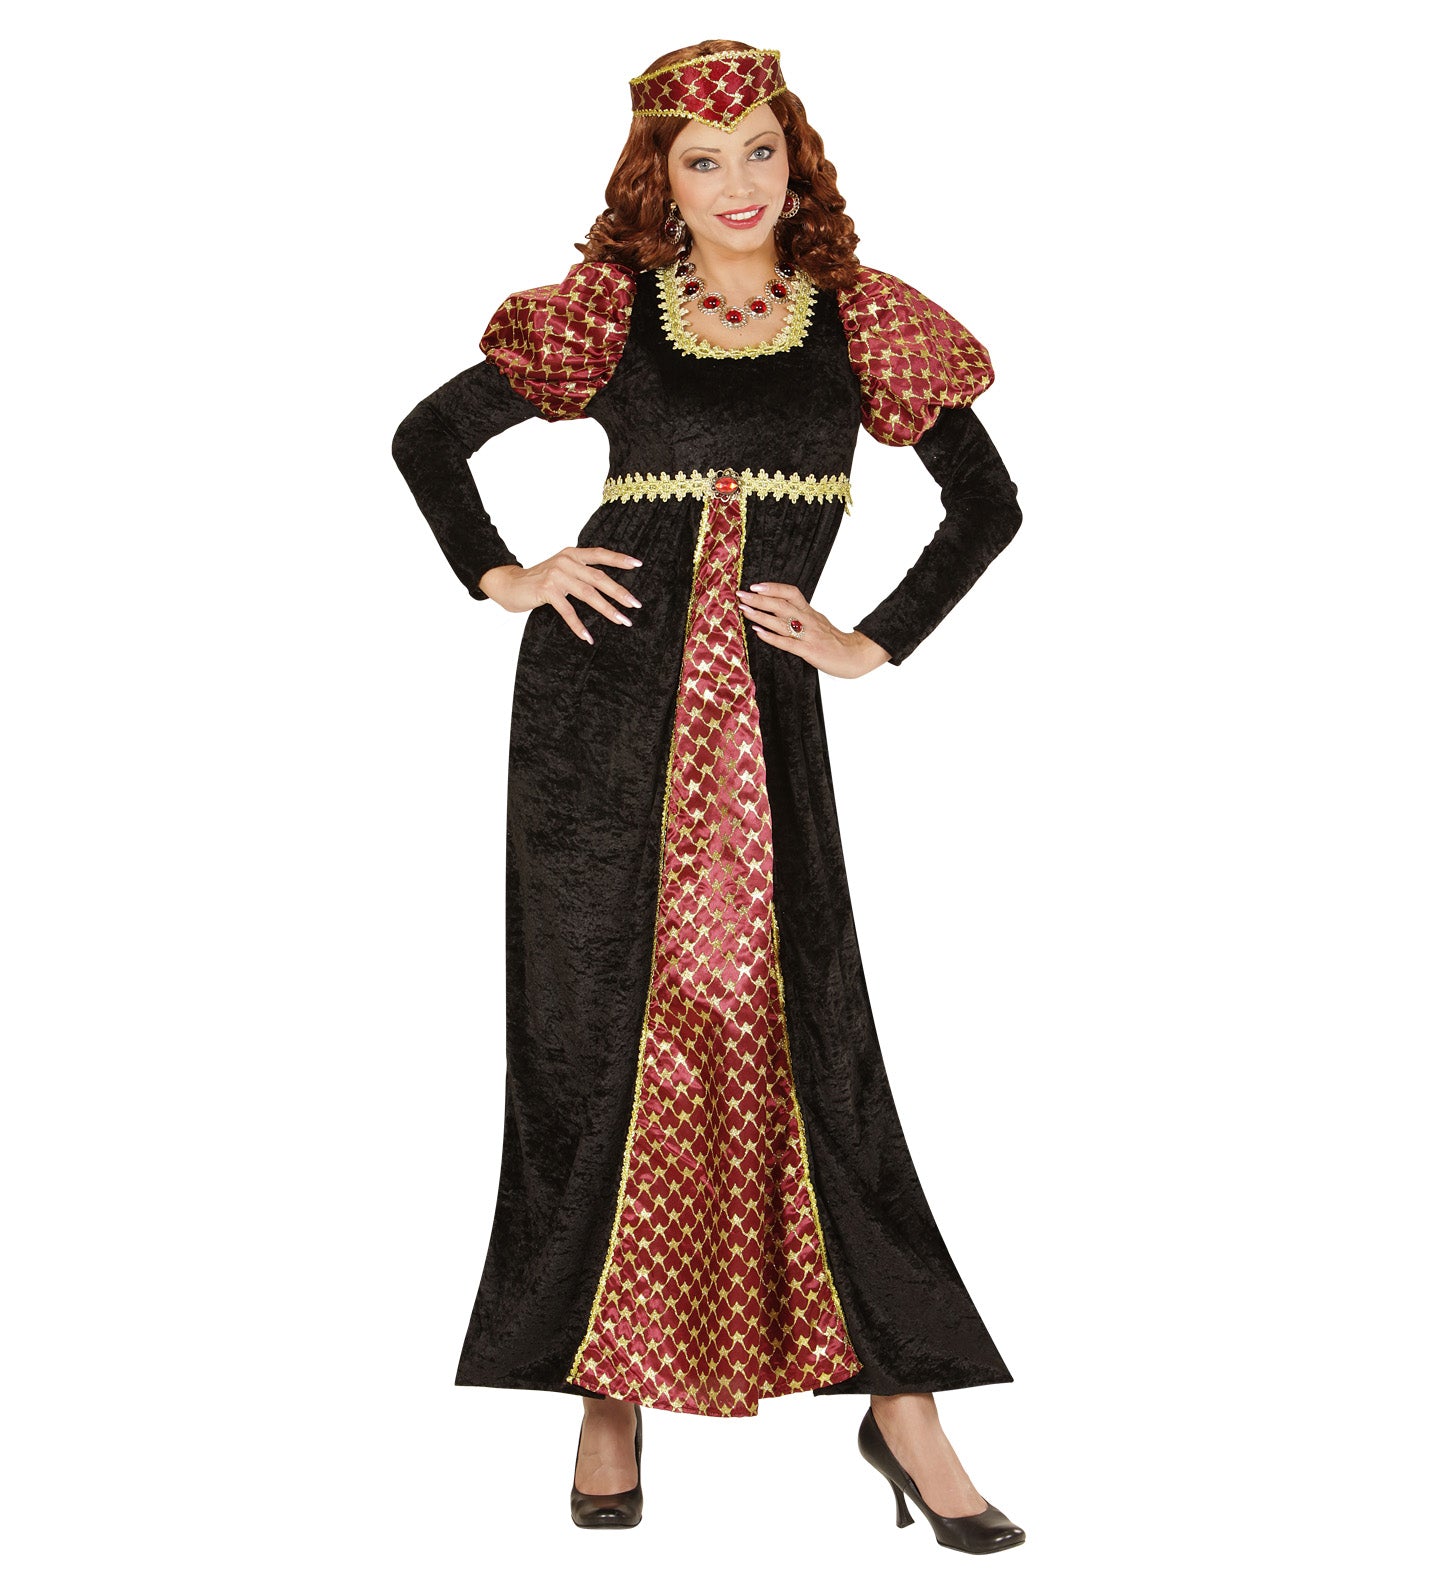 Fair Maiden Medieval costume